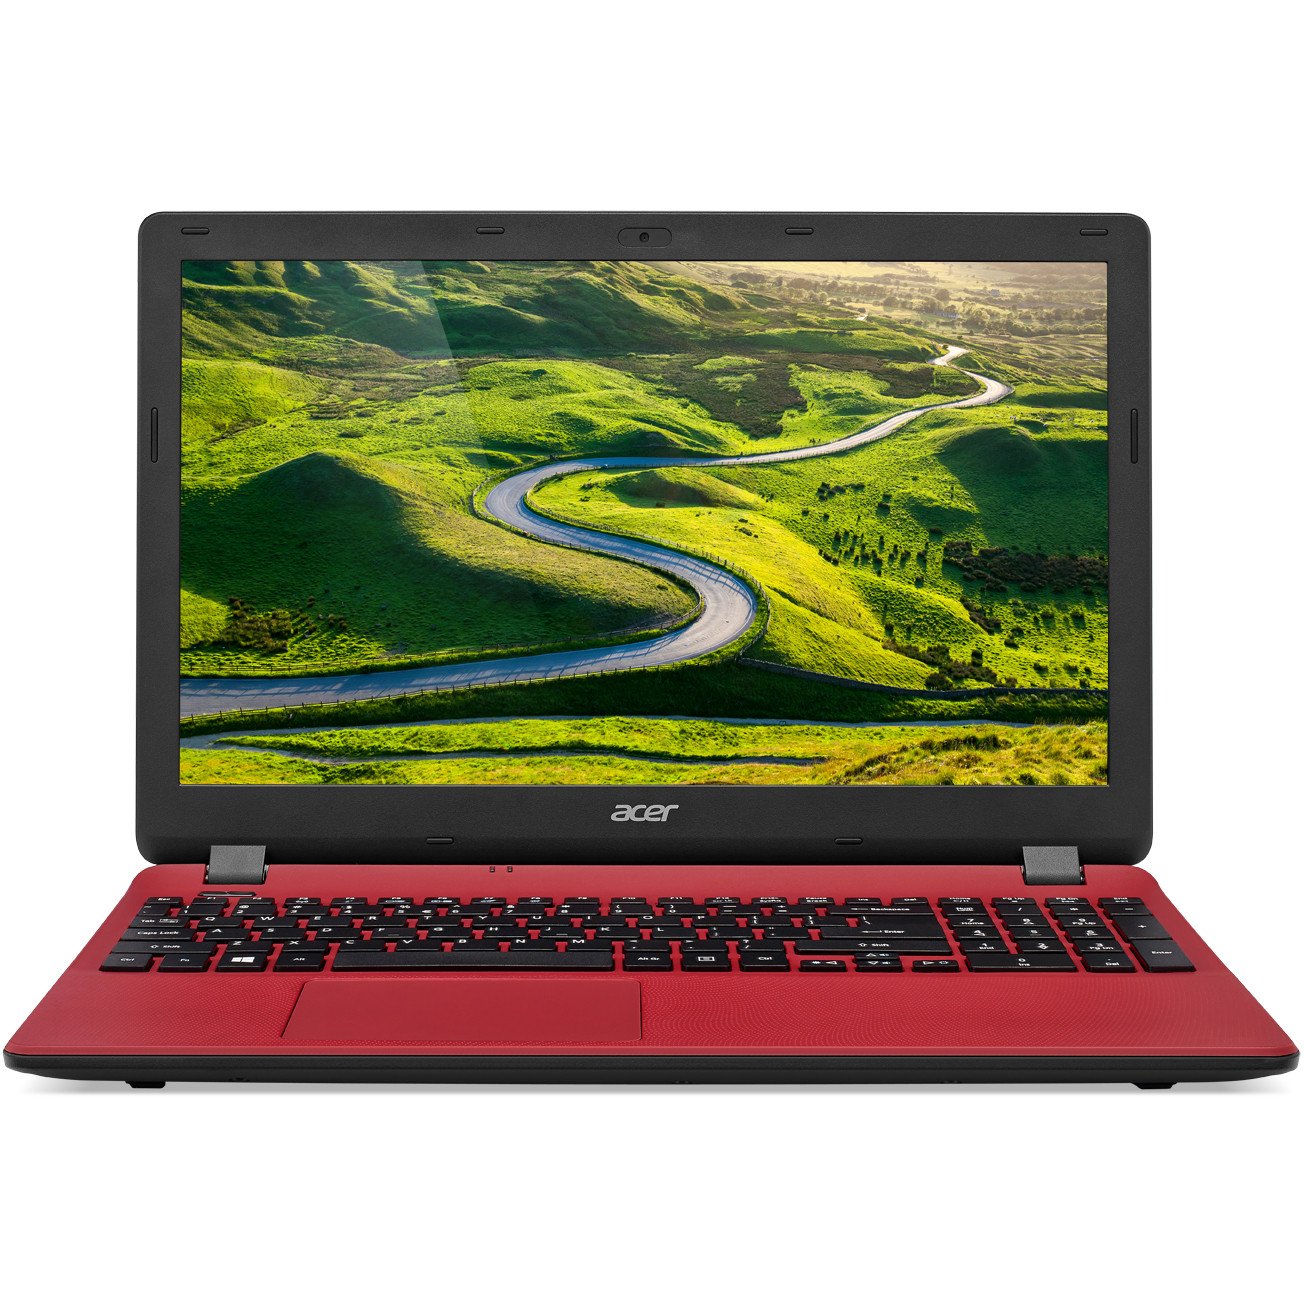  Laptop Acer Aspire ES1-571, Intel Core i3-5005U, 4GB DDR3, HDD 500GB, Intel HD Graphics, Linux, Rosu 